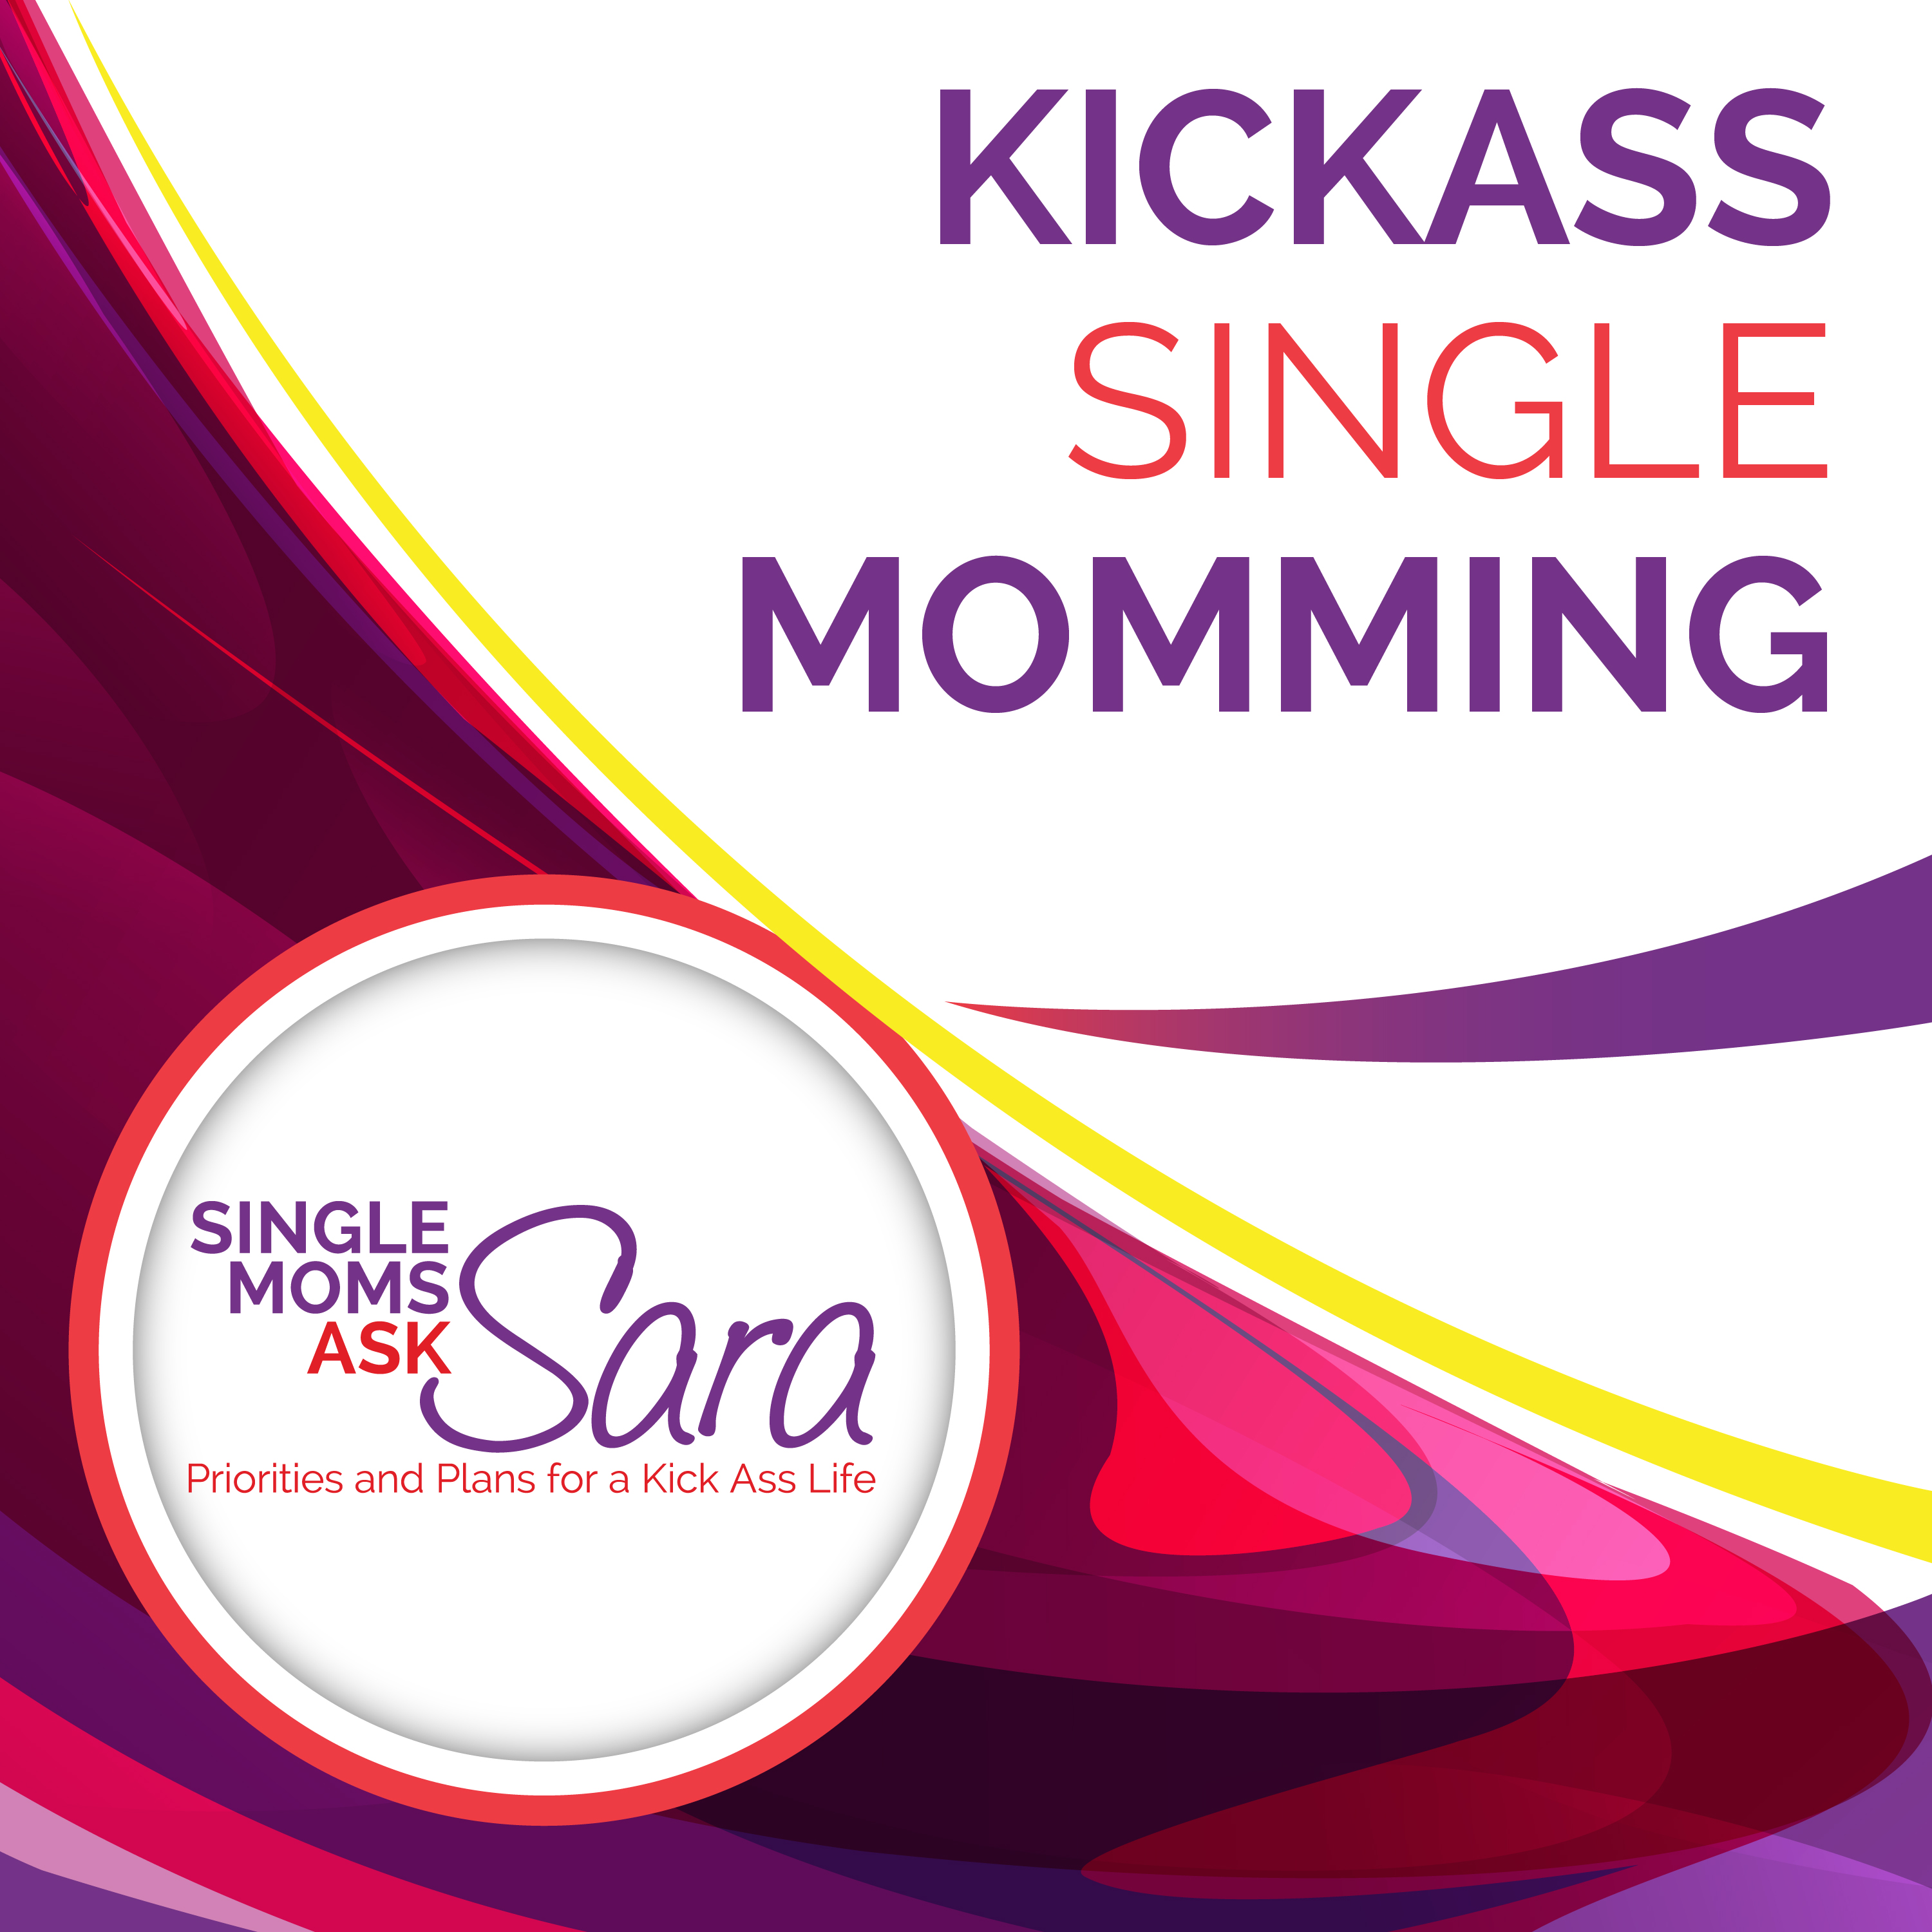 Kissass Single Momming Sara Sherman